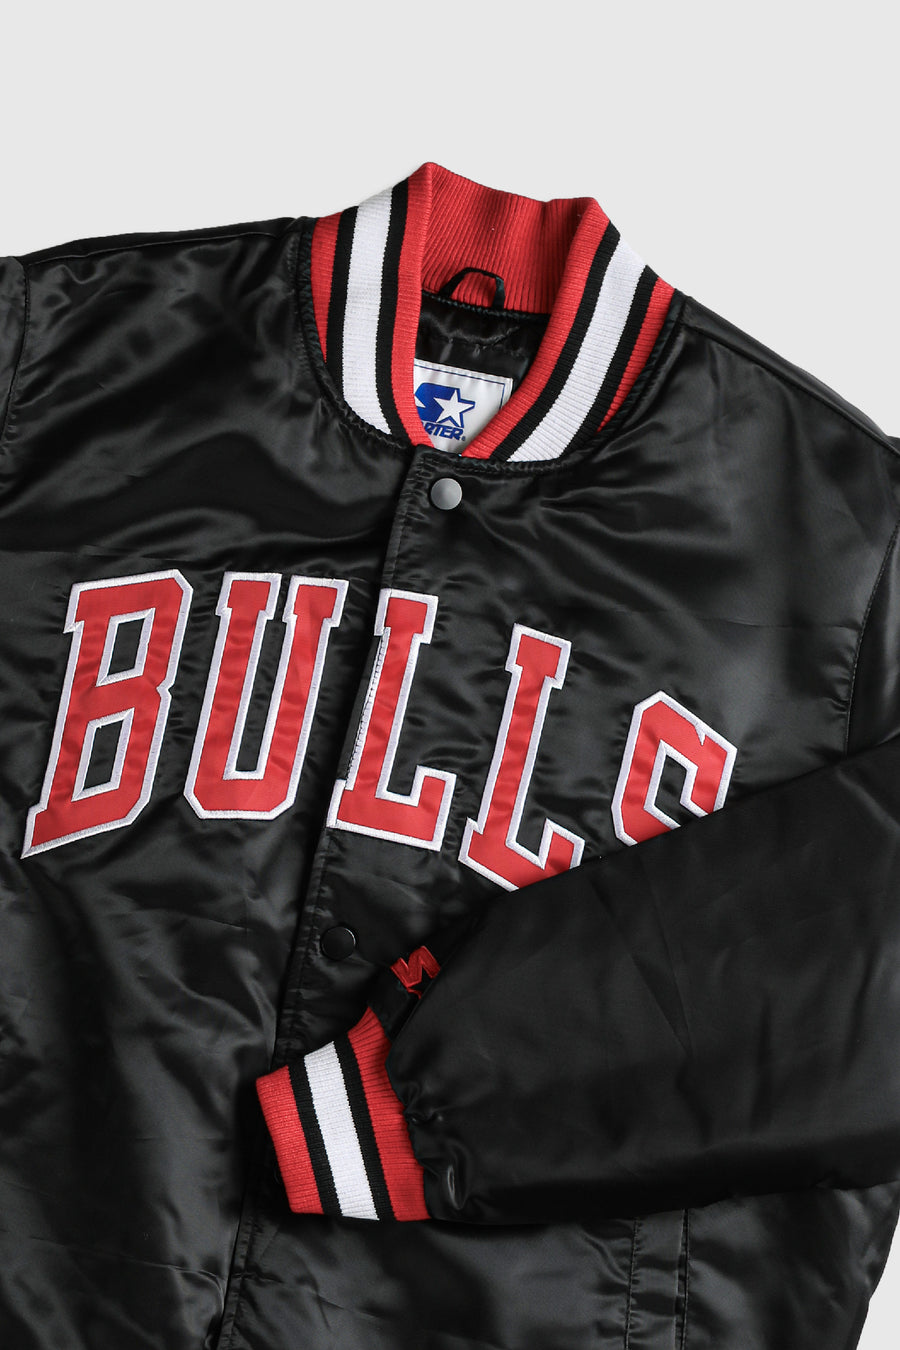 Vintage Bulls NBA Satin Bomber Jacket - XL